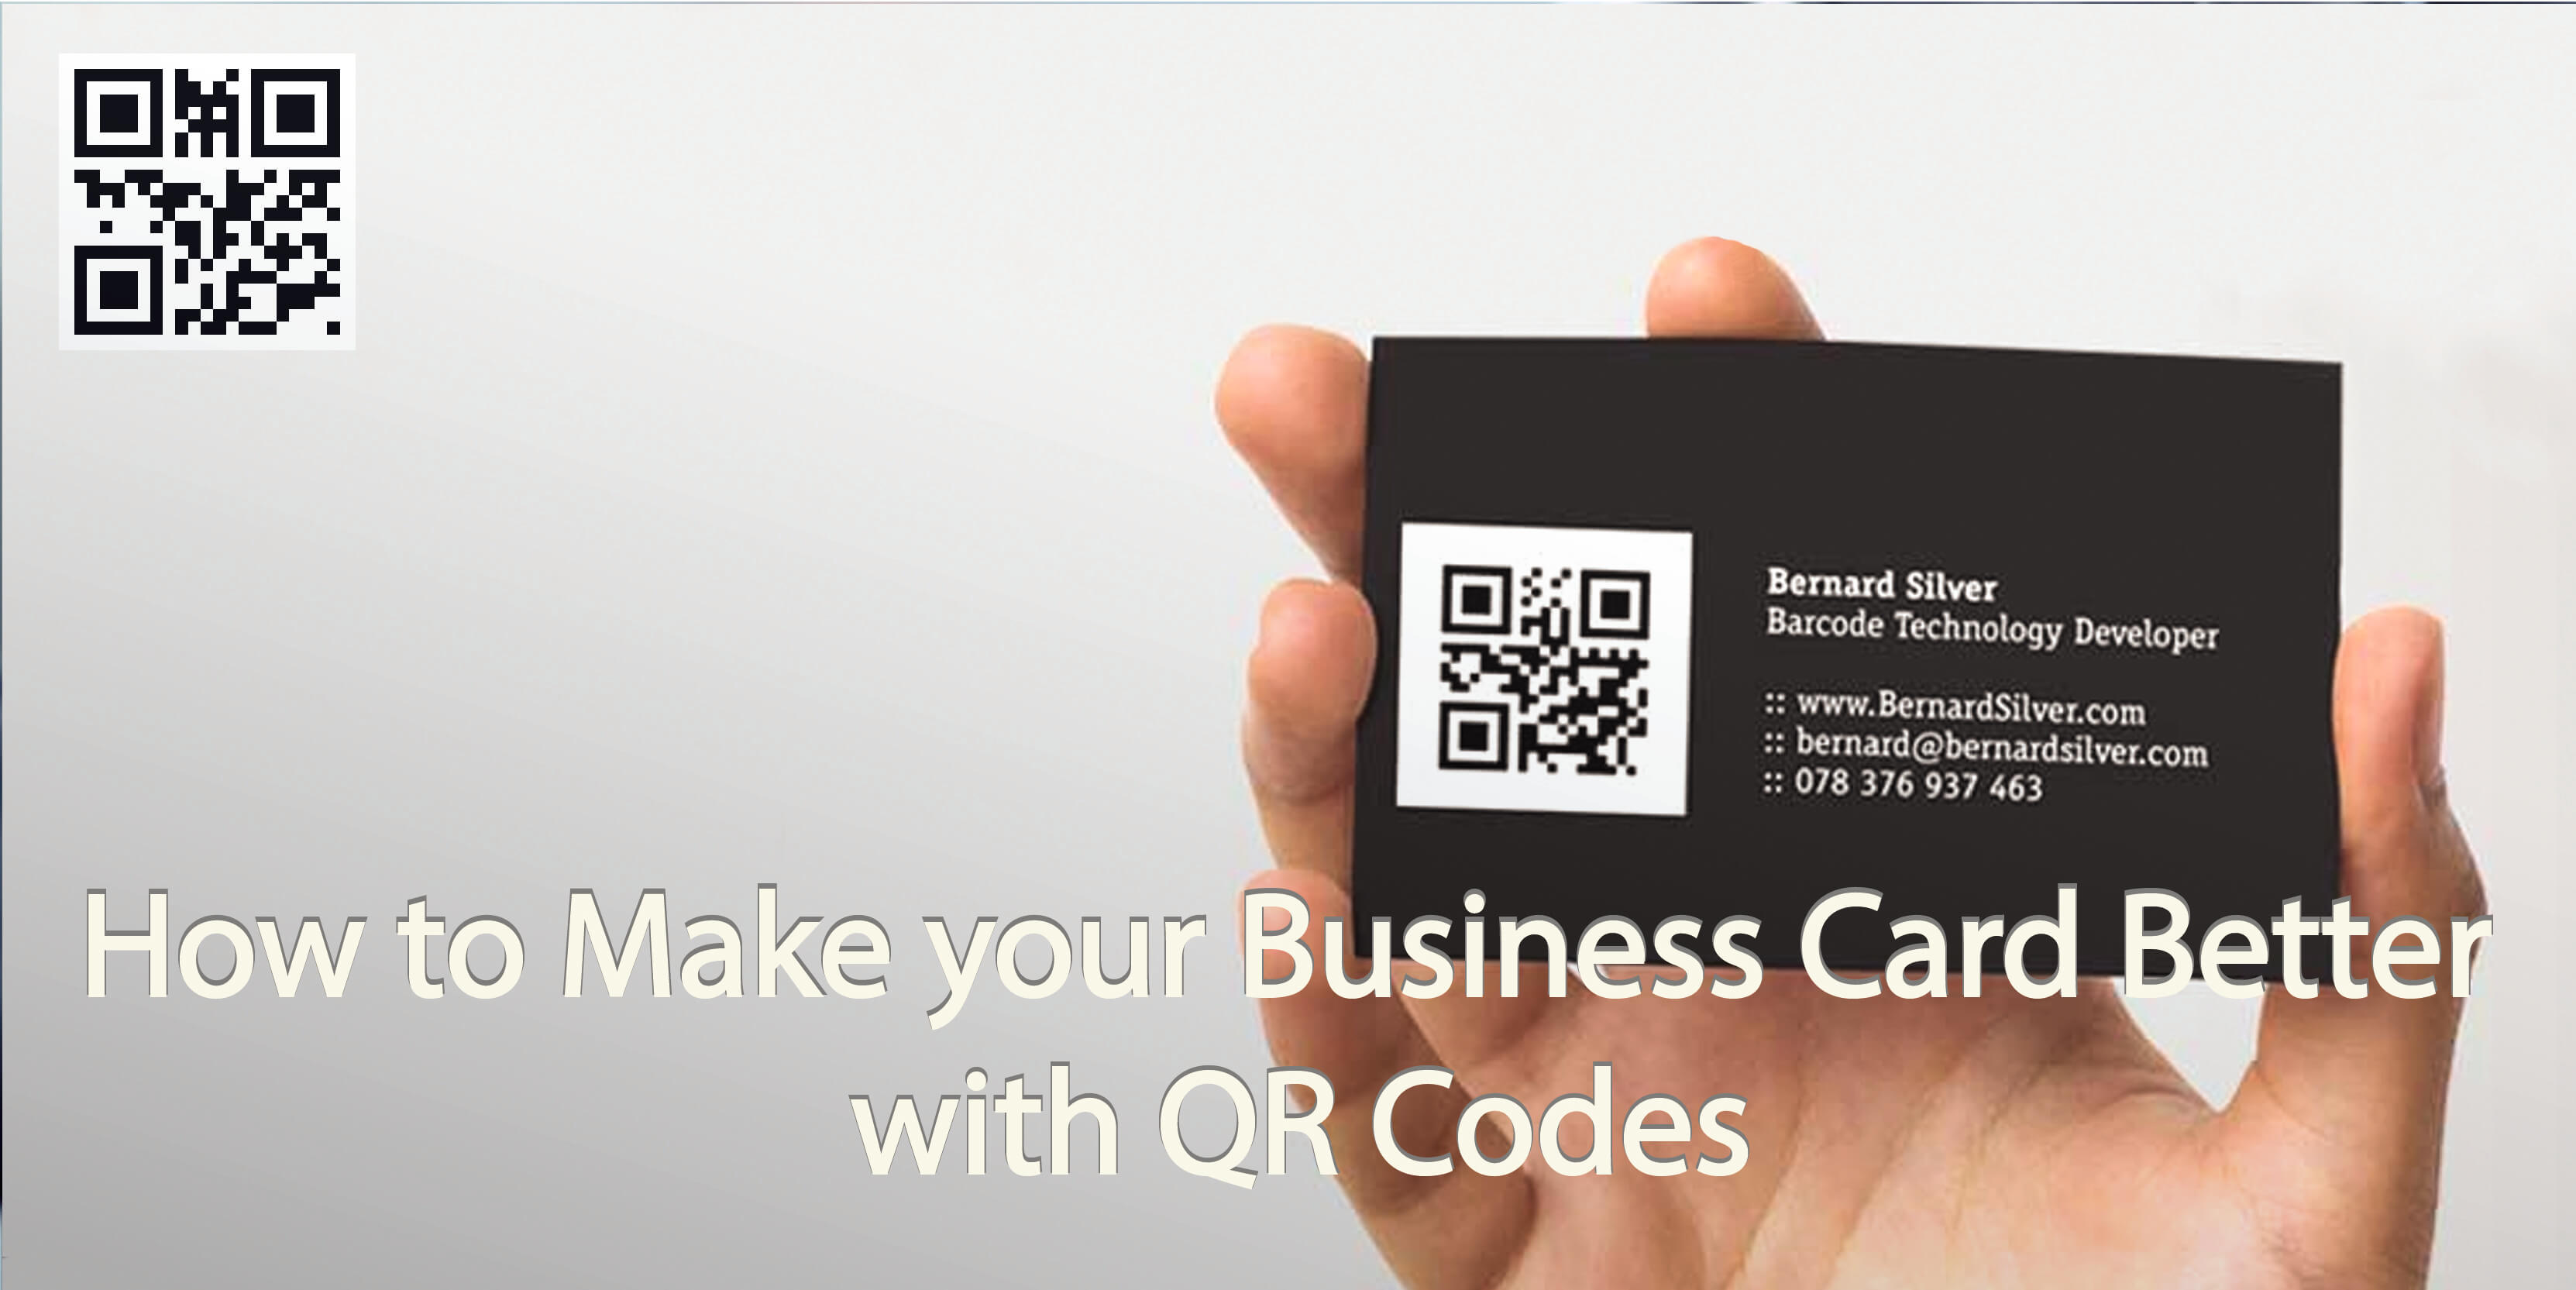 Альфа бизнес qr код. Визитка с QR кодом. QR code на визитке. Визитка c QR кодомдизайн. Вертикальные визитки с QR кодом.